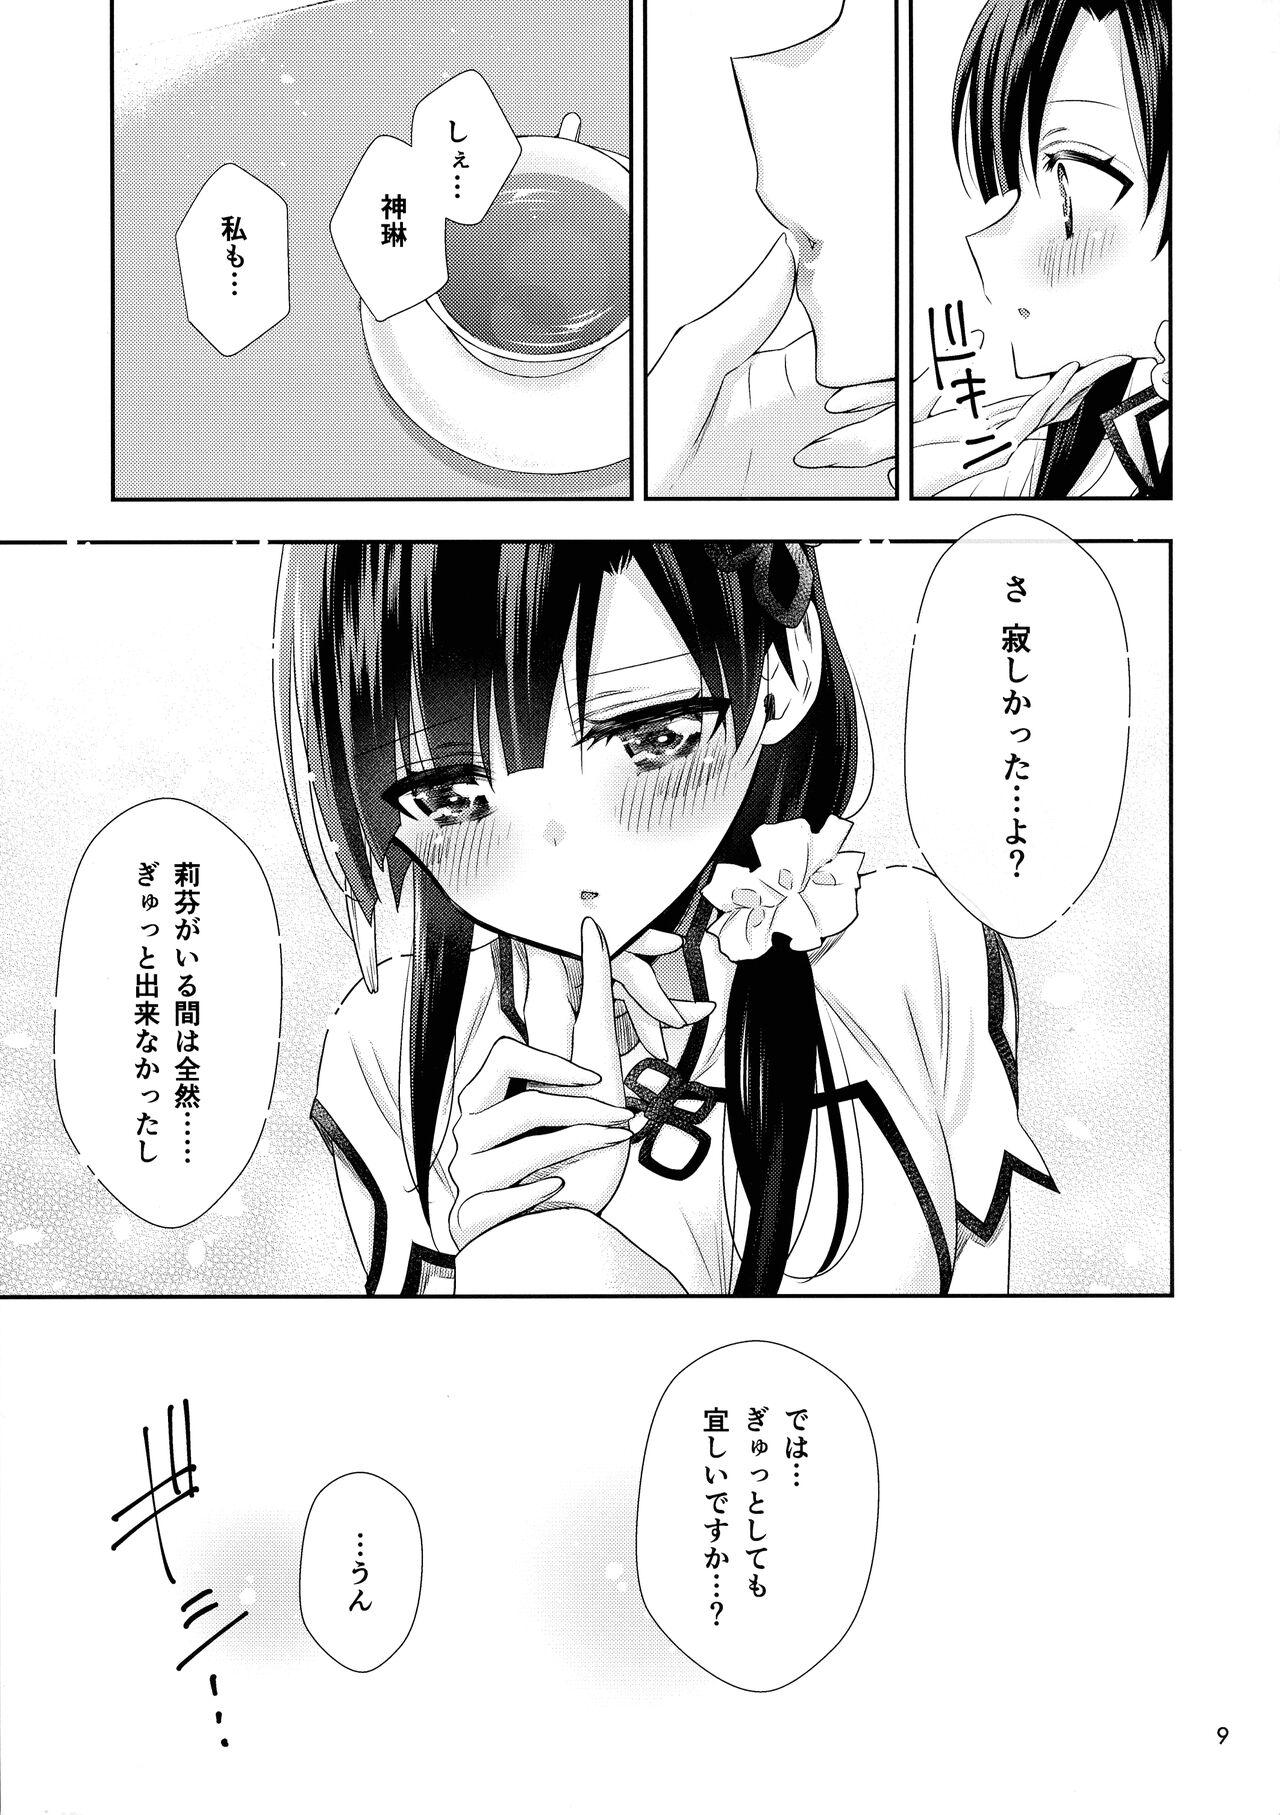 Loira Kami Rin ga ame Yoshimi ni Yaki Mochi o Yaku Hanashi - Assault lily Facebook - Page 9